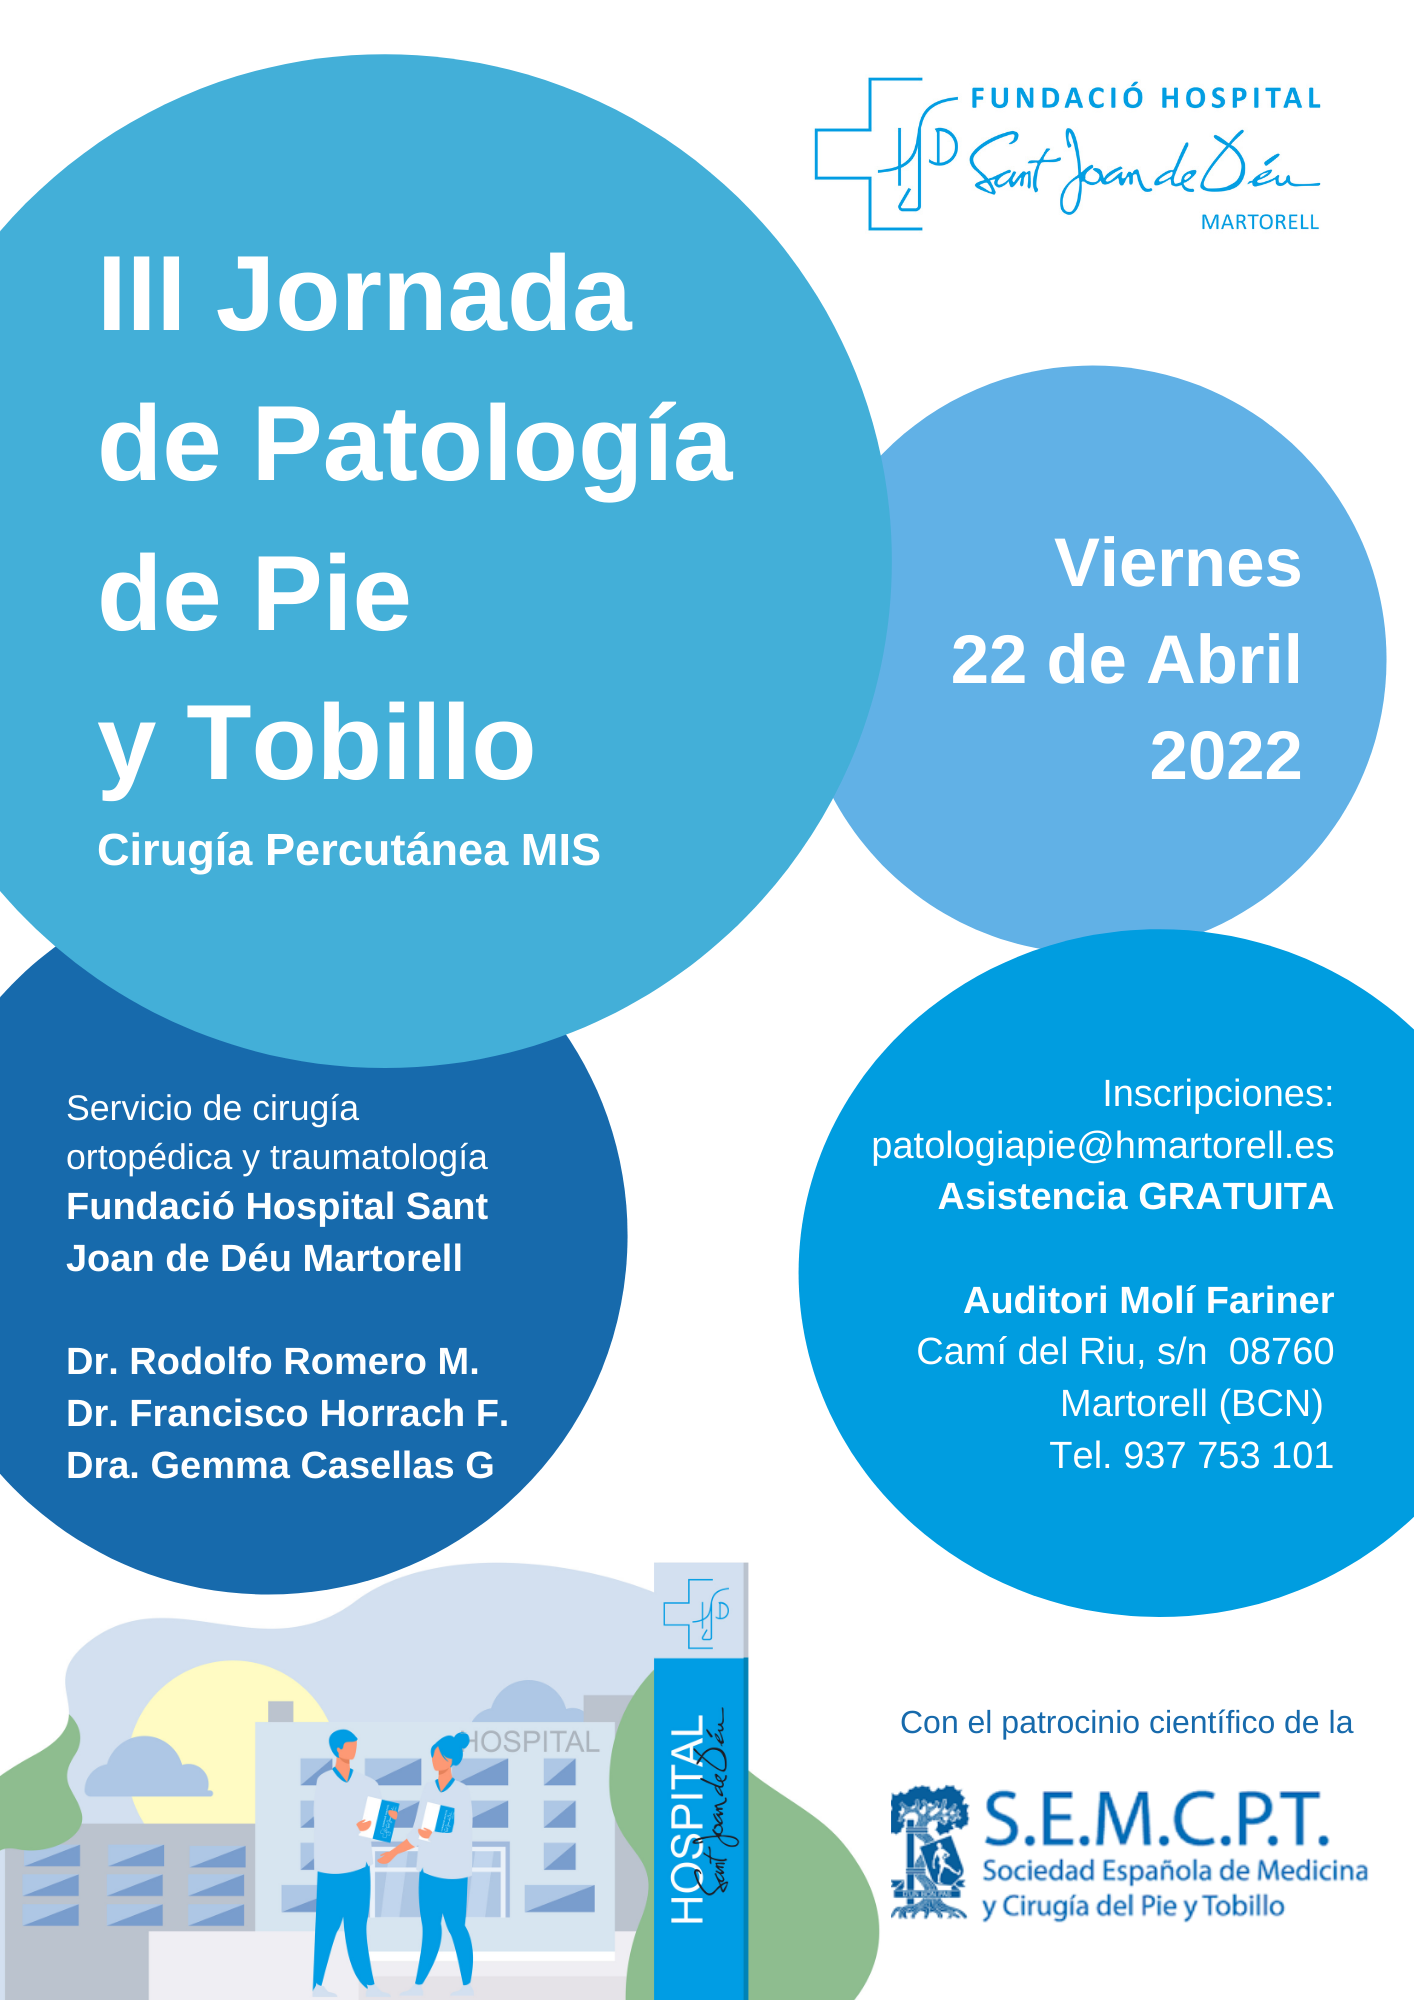 III JORNADA DE PATOLOGIA DE PIE Y TOBILLO “Con el patrocinio científico de la Sociedad Española de Medicina y Cirugía del Pie y Tobillo”